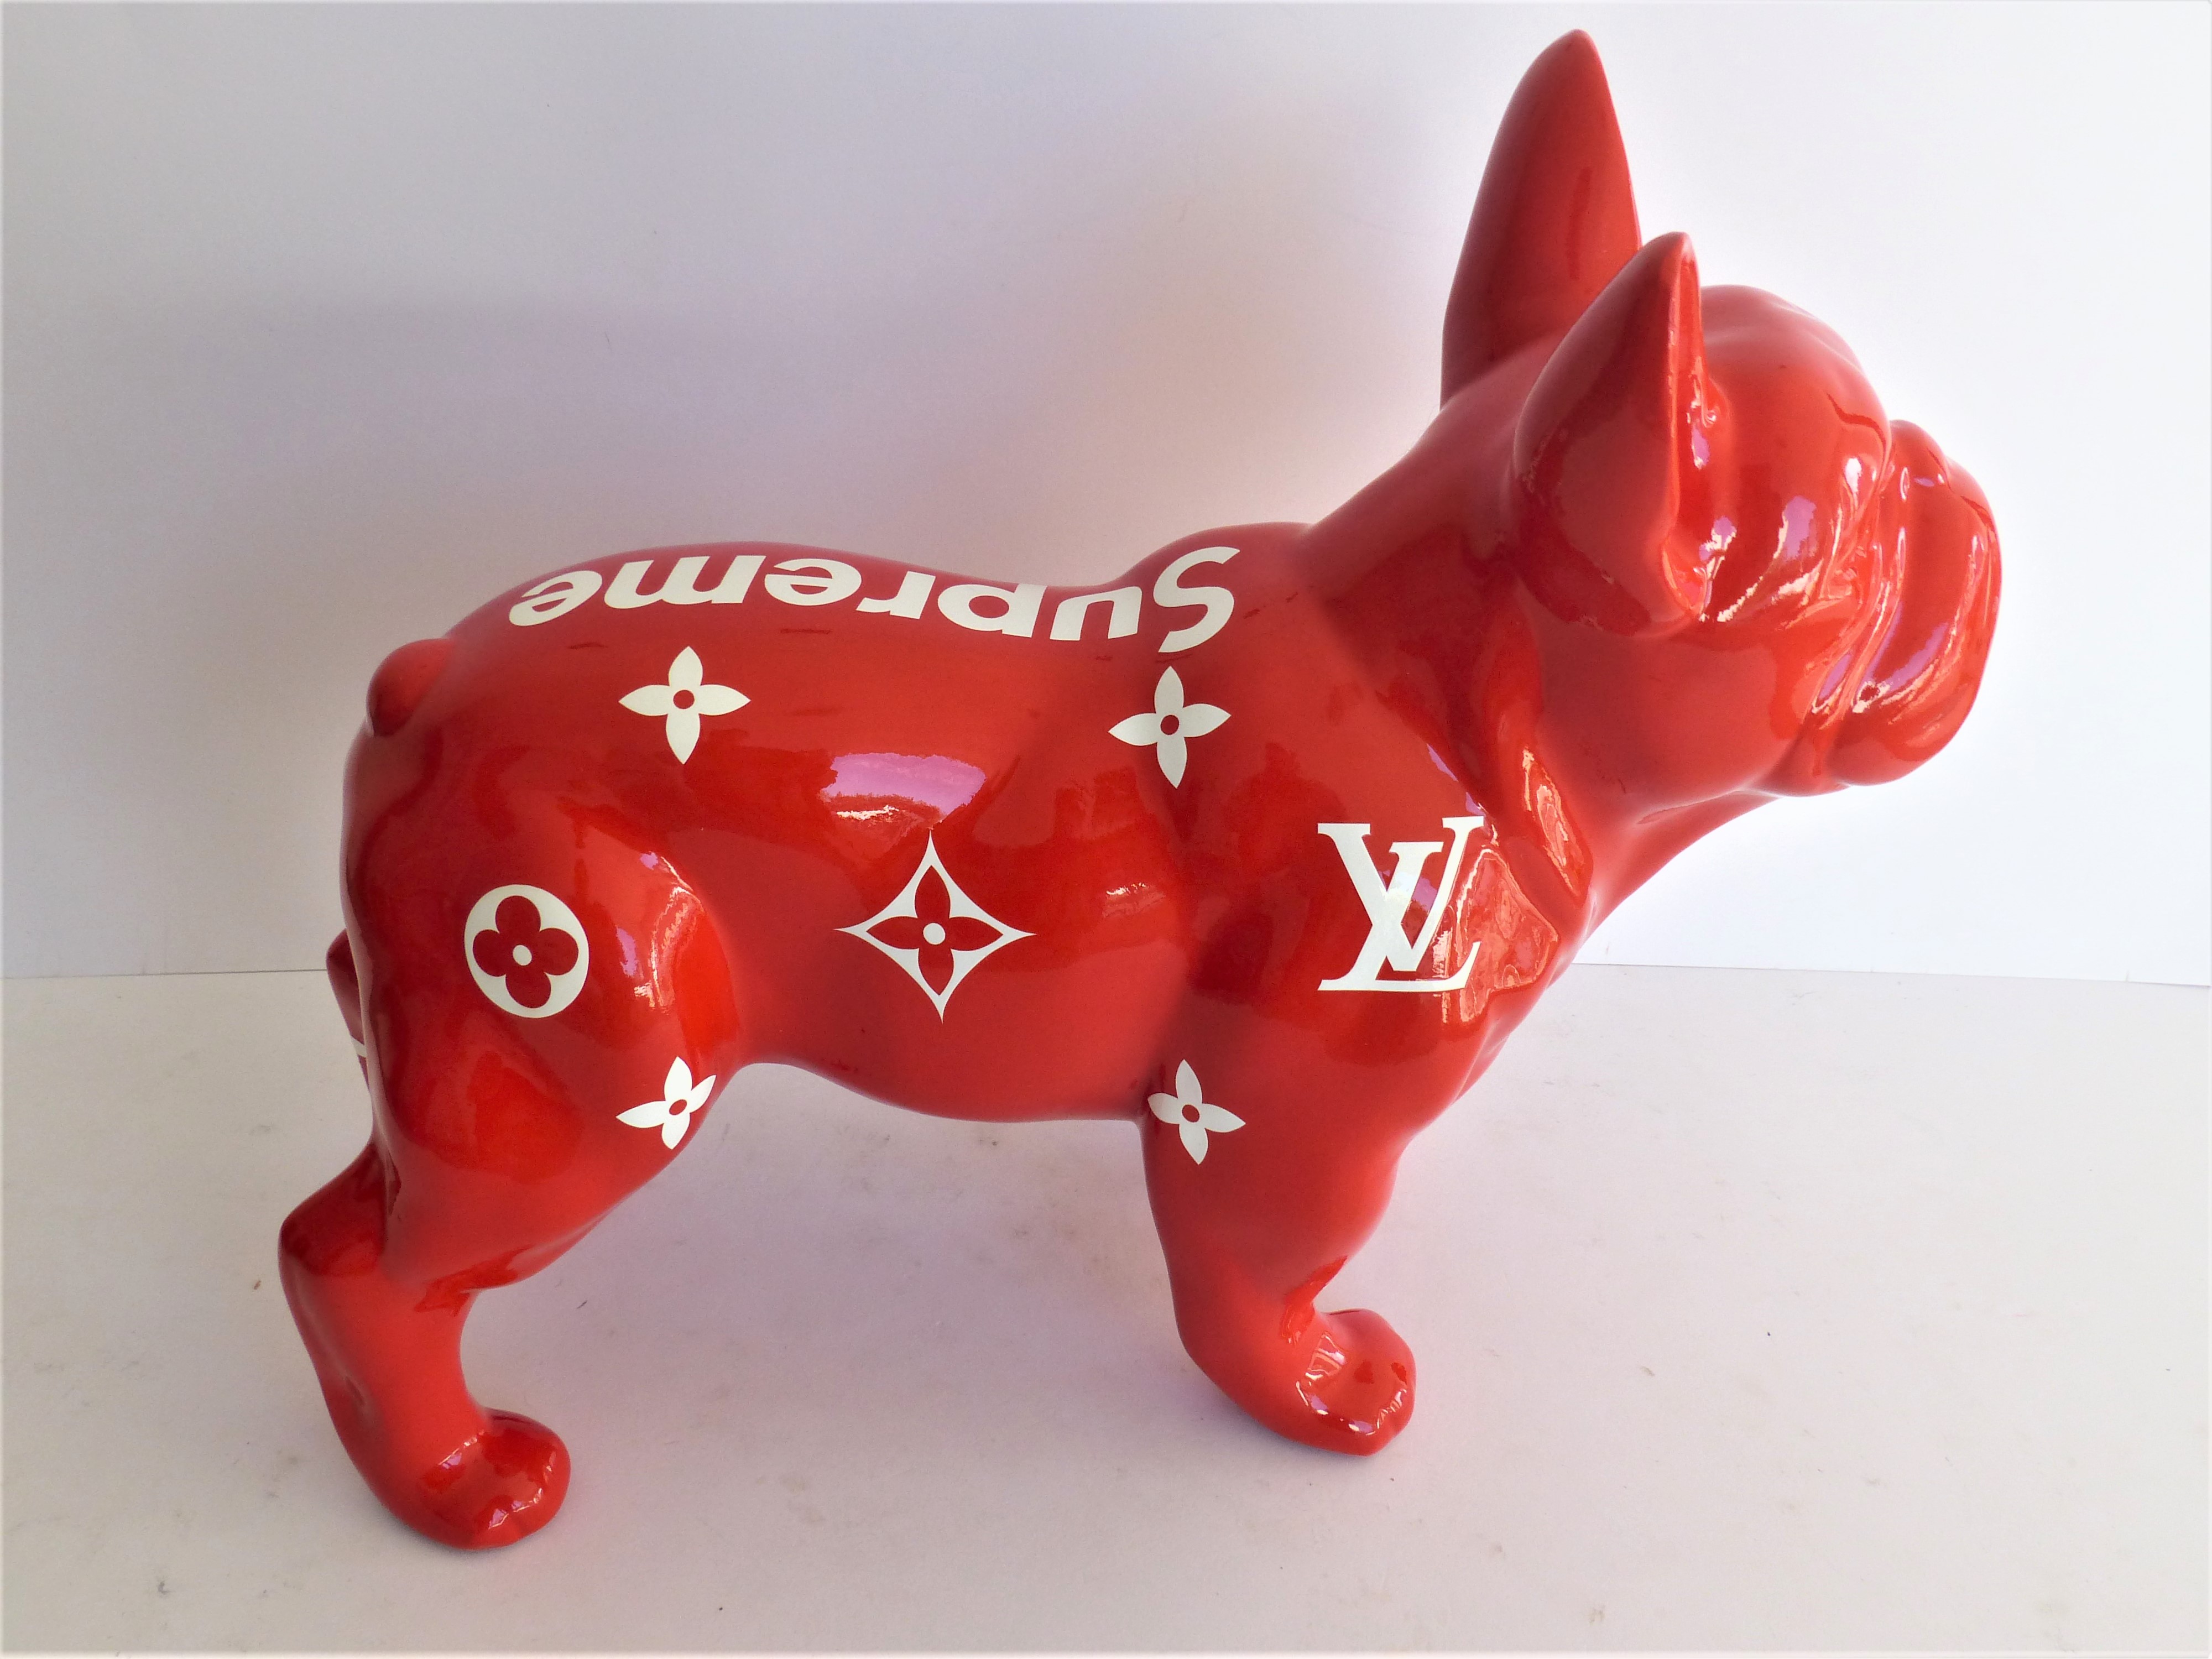 Louis Vuitton/Bitcoin bulldog